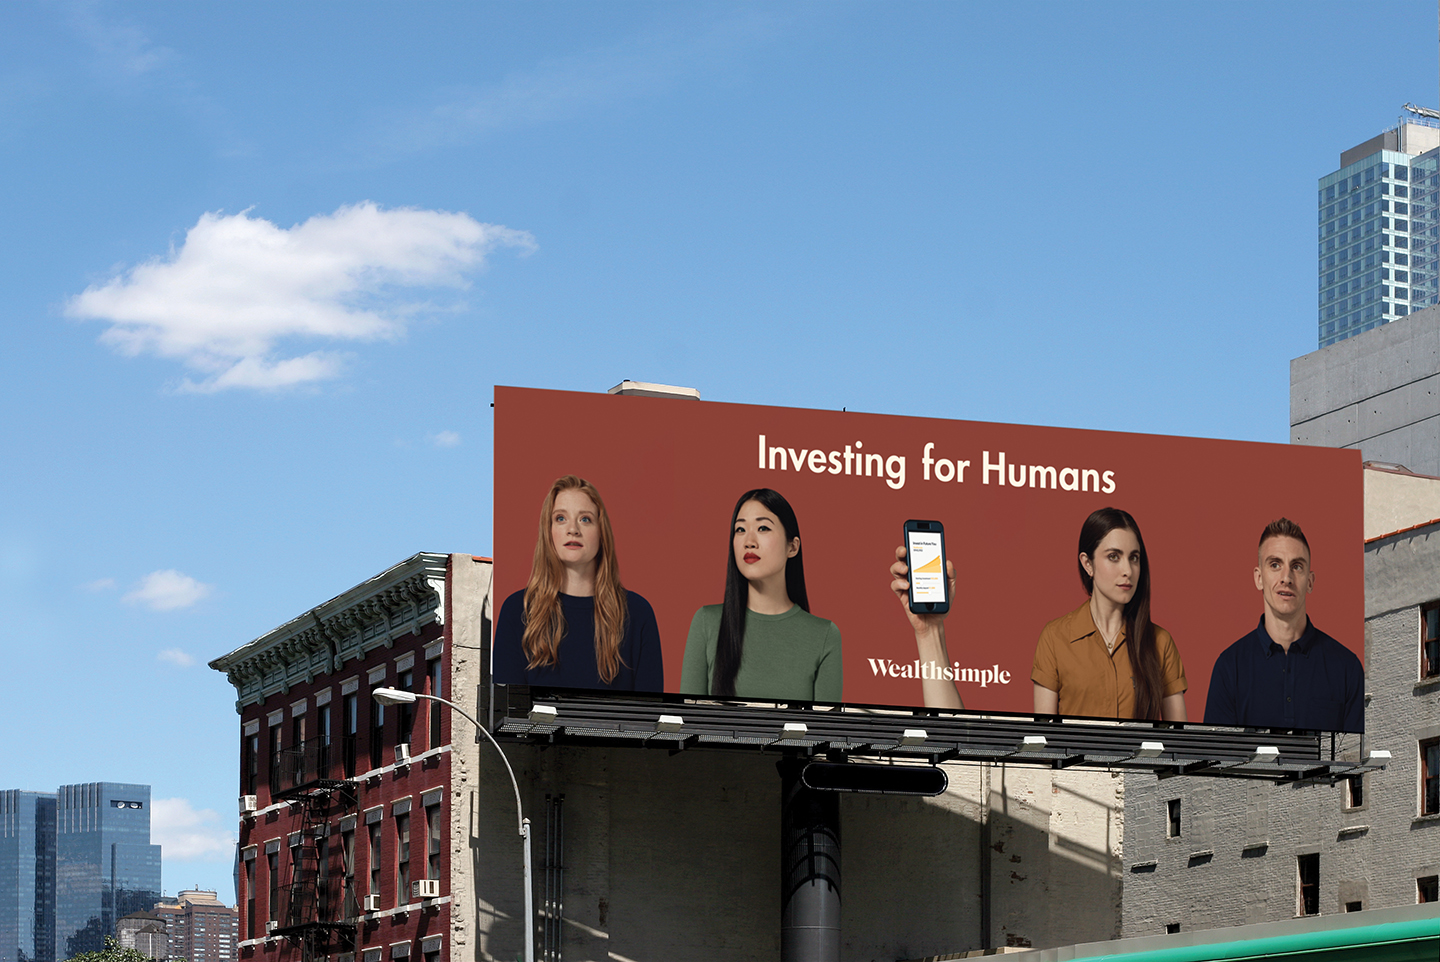 roadside billboard in new york city